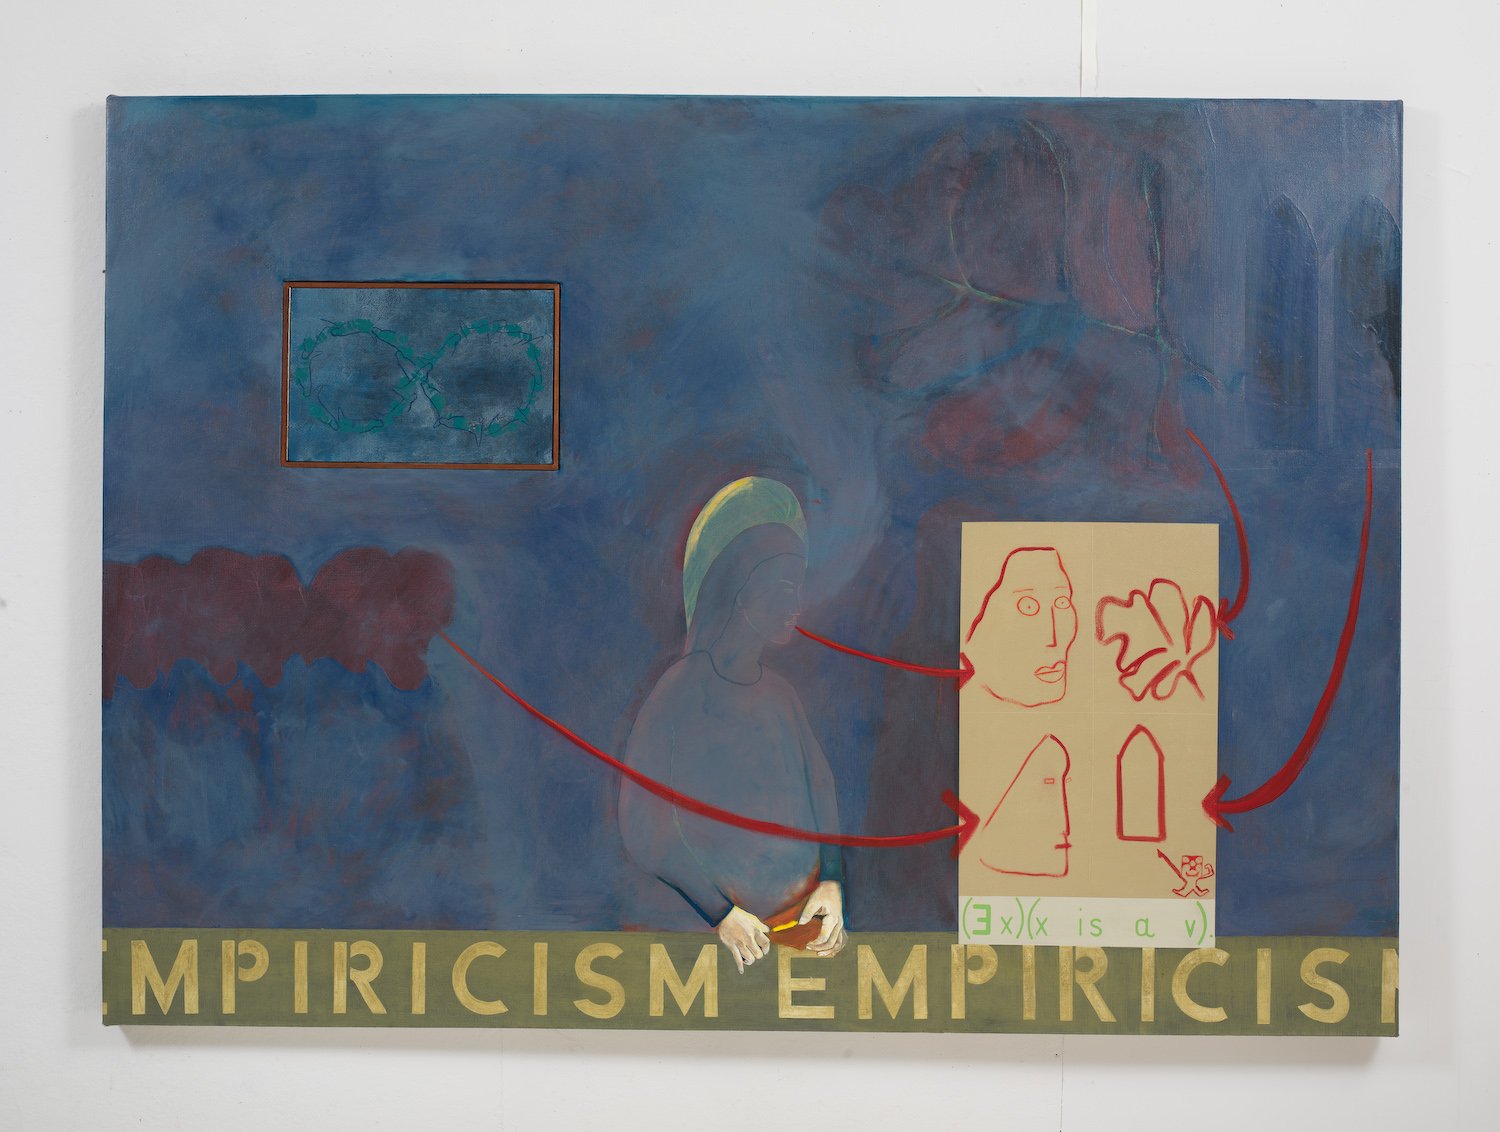 Empiricism/The A Priori